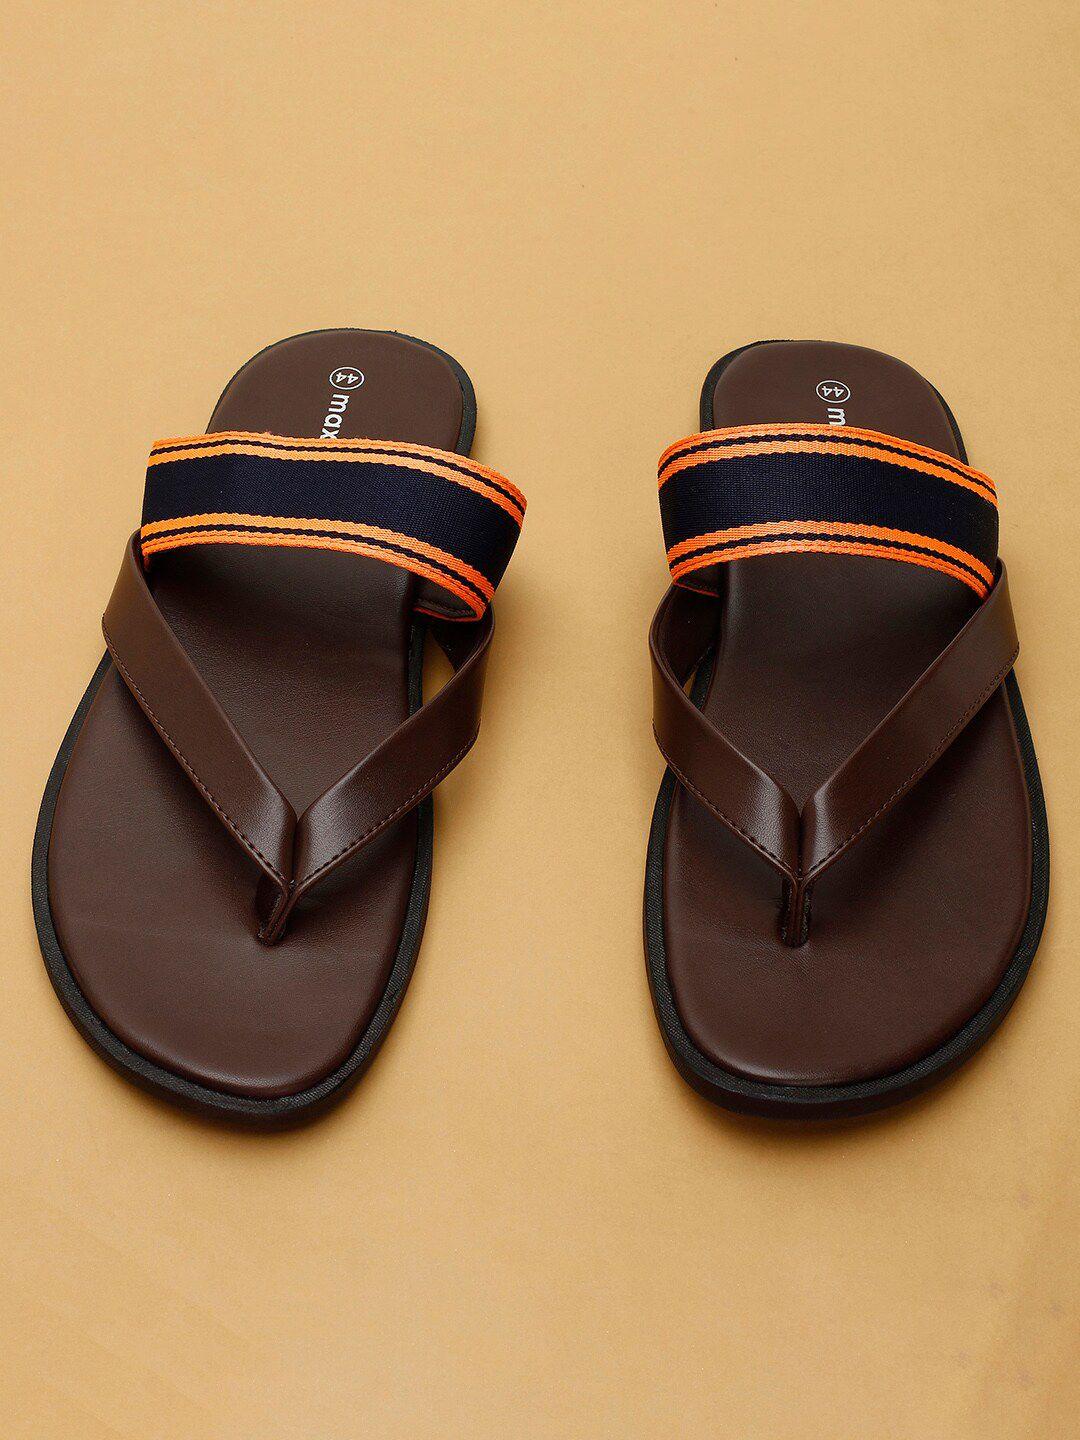 max men brown comfort sandals